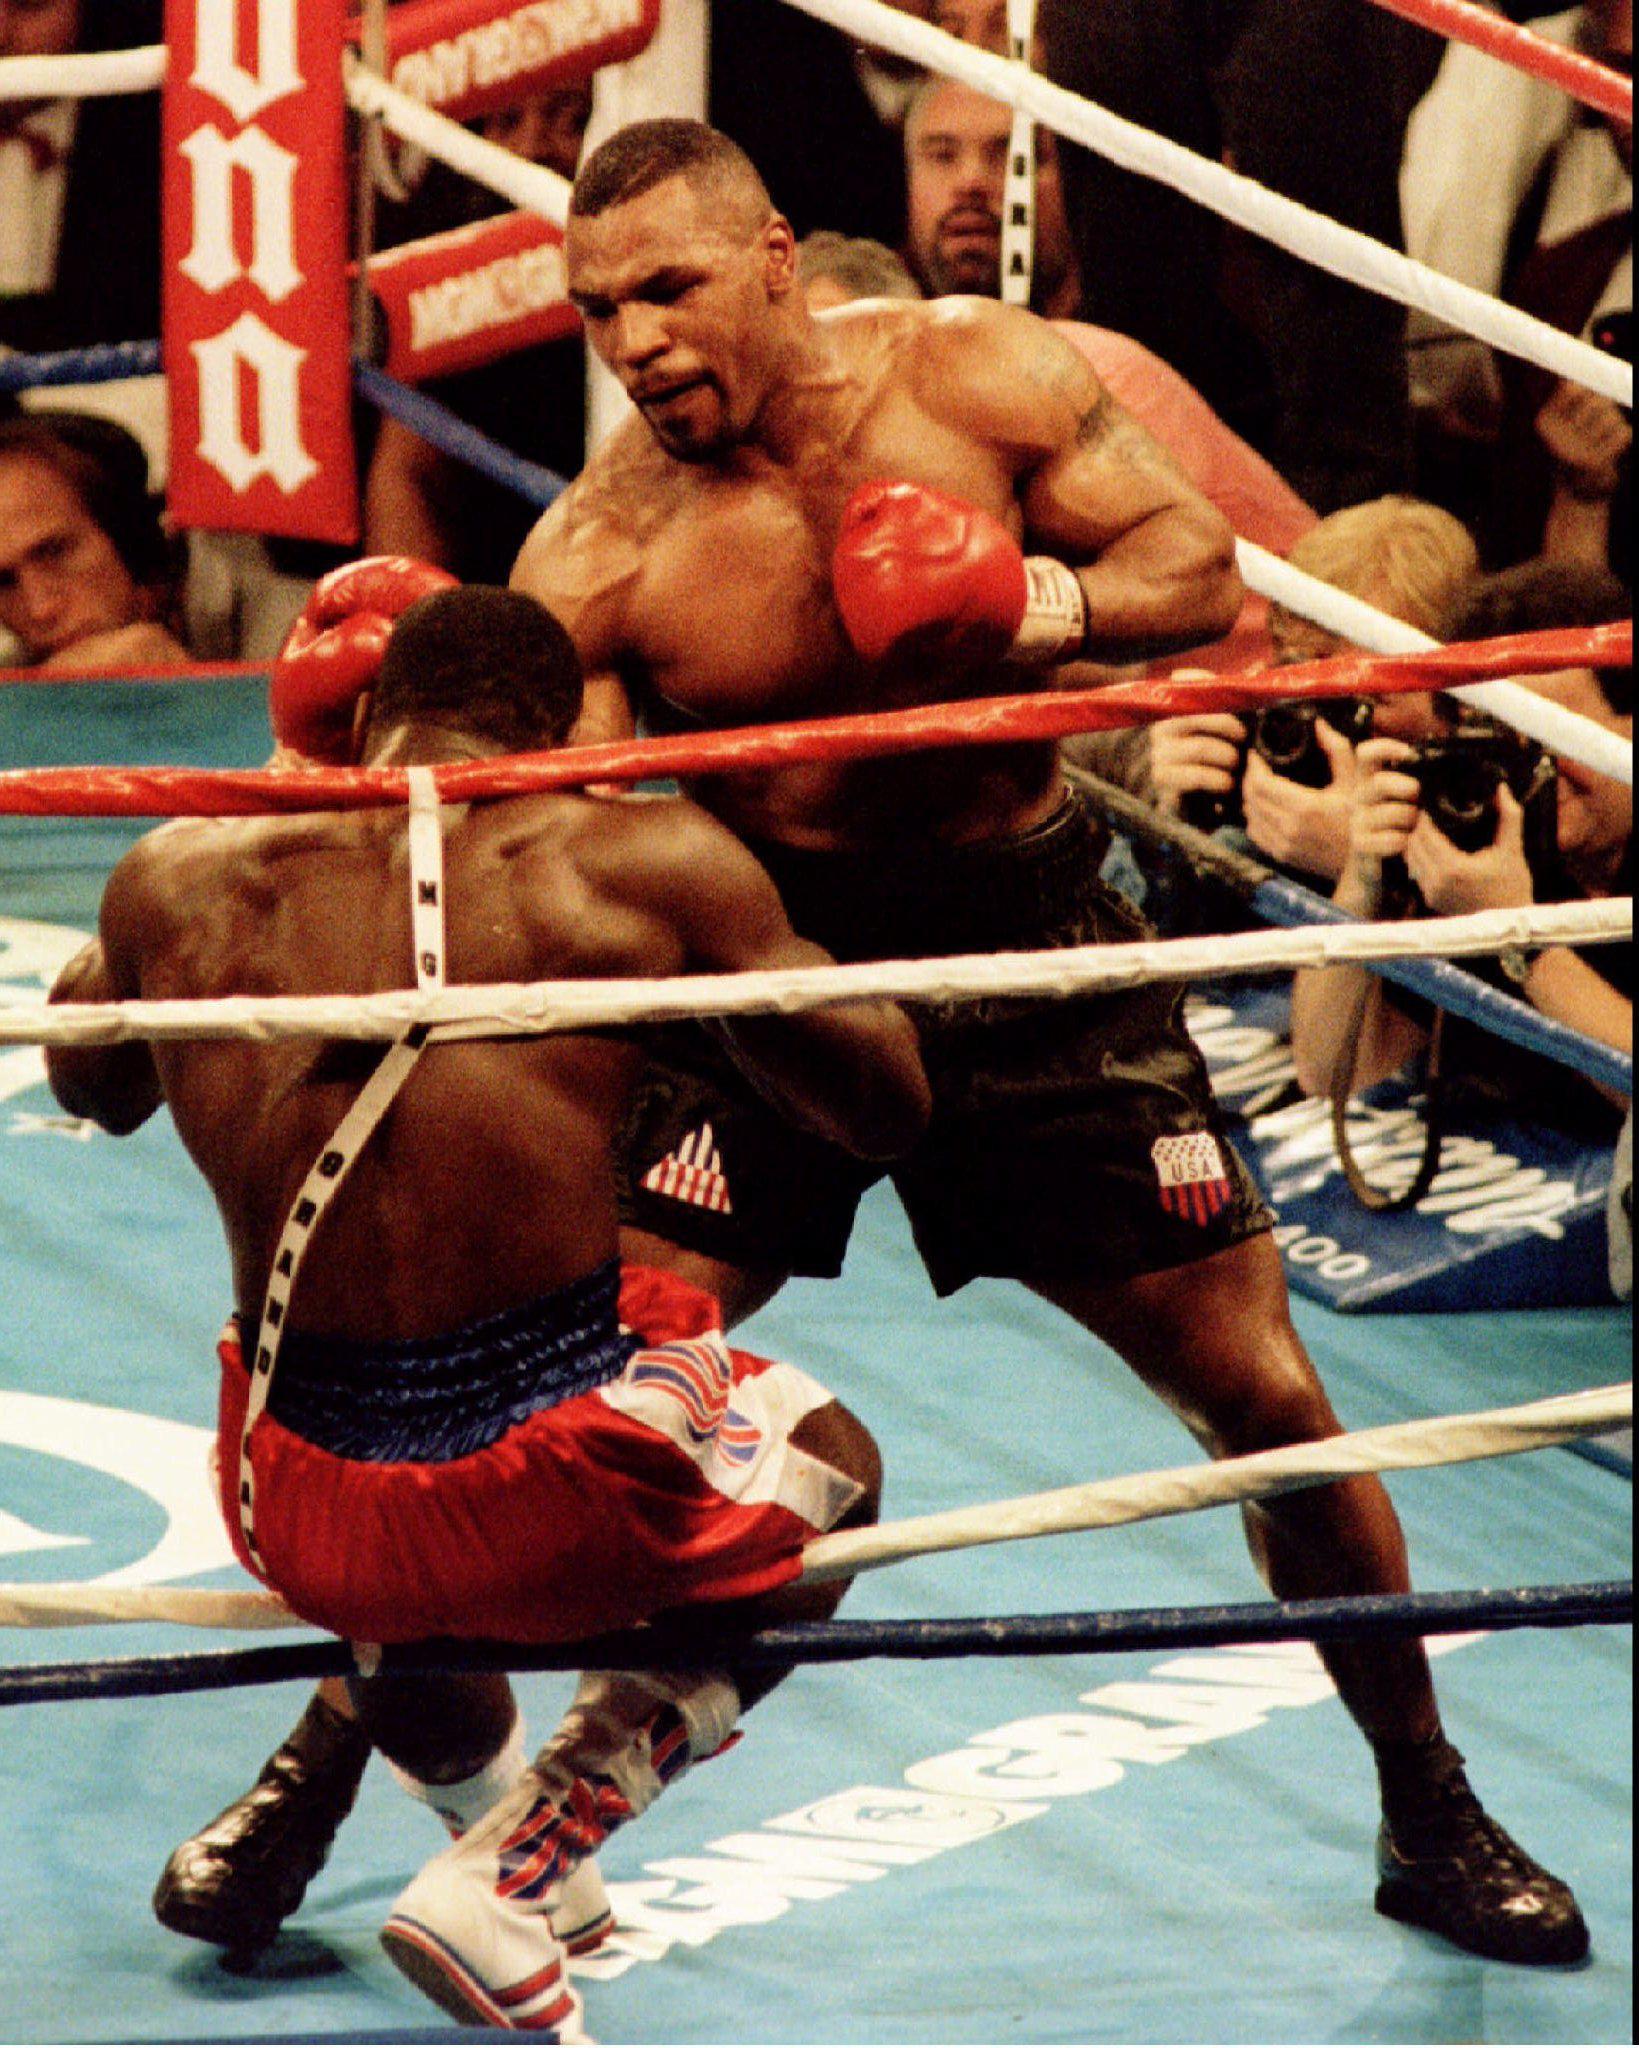 Eski Koruması Rudy Gonzalez ünlü Boksör Mike Tysonın Sırlarını Ifşa Etti Şampiyon Mike Tyson